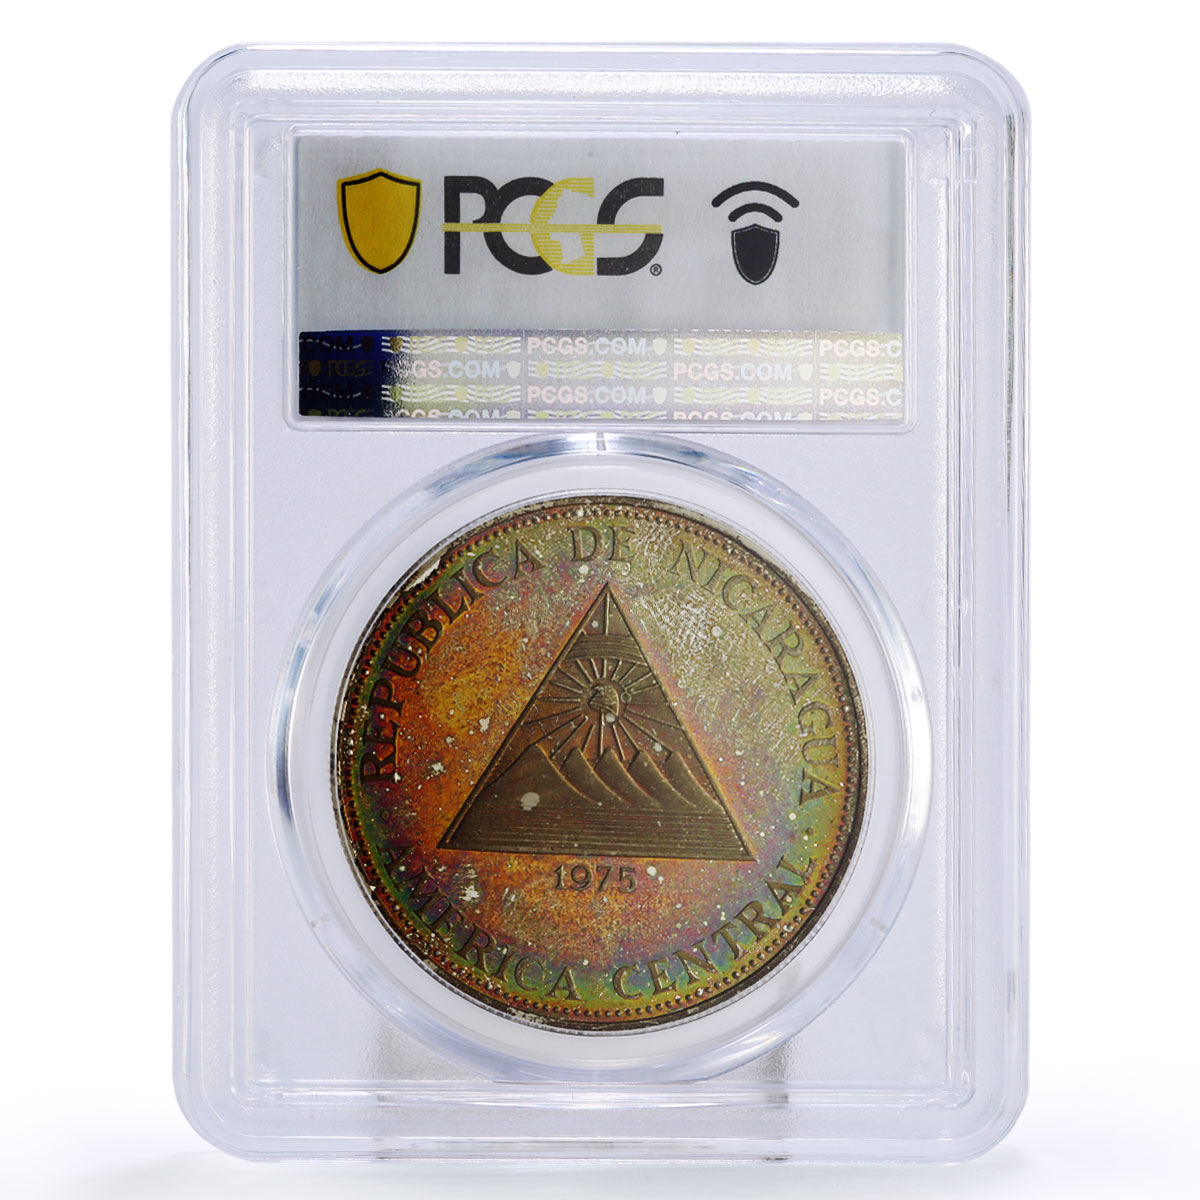 Nicaragua 100 cordobas Earthquake Thanks to the World PR64 PCGS Ag coin 1975